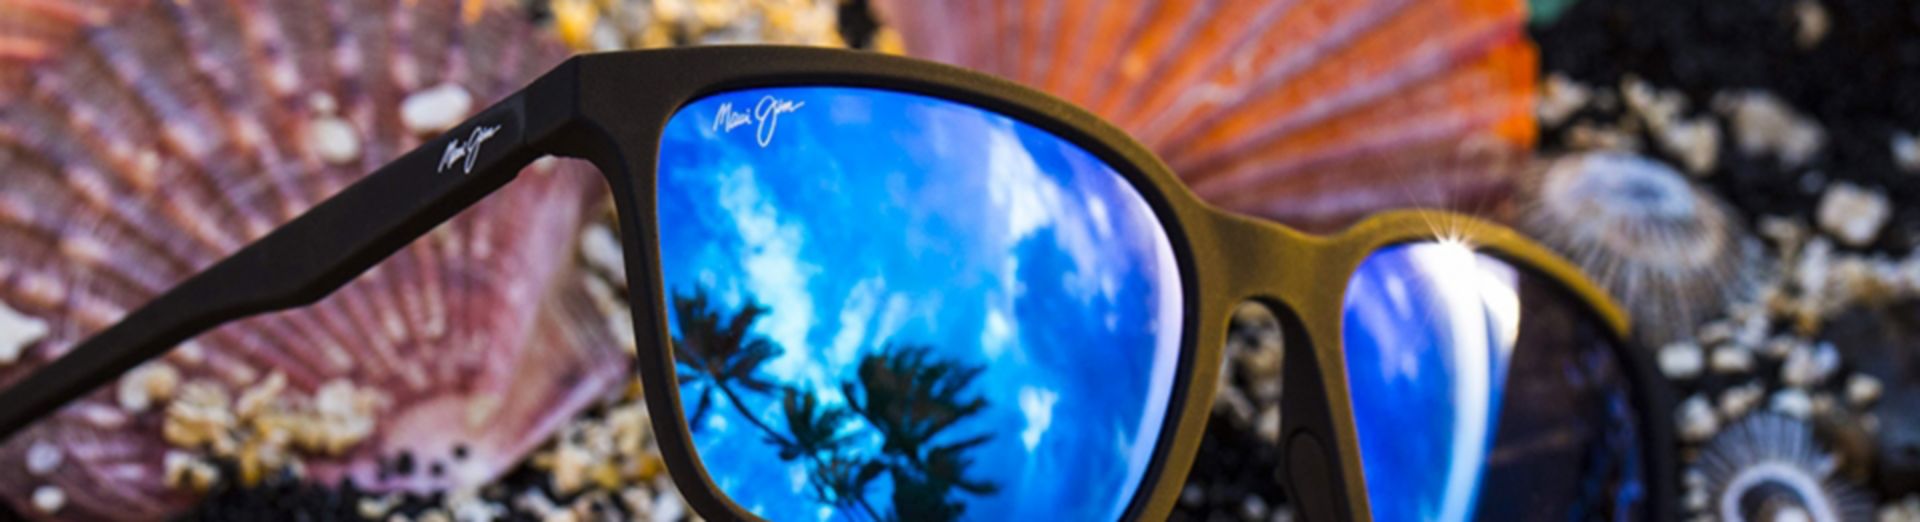 Sonnenbrille von Maui Jim in der sich Palmen spiegeln